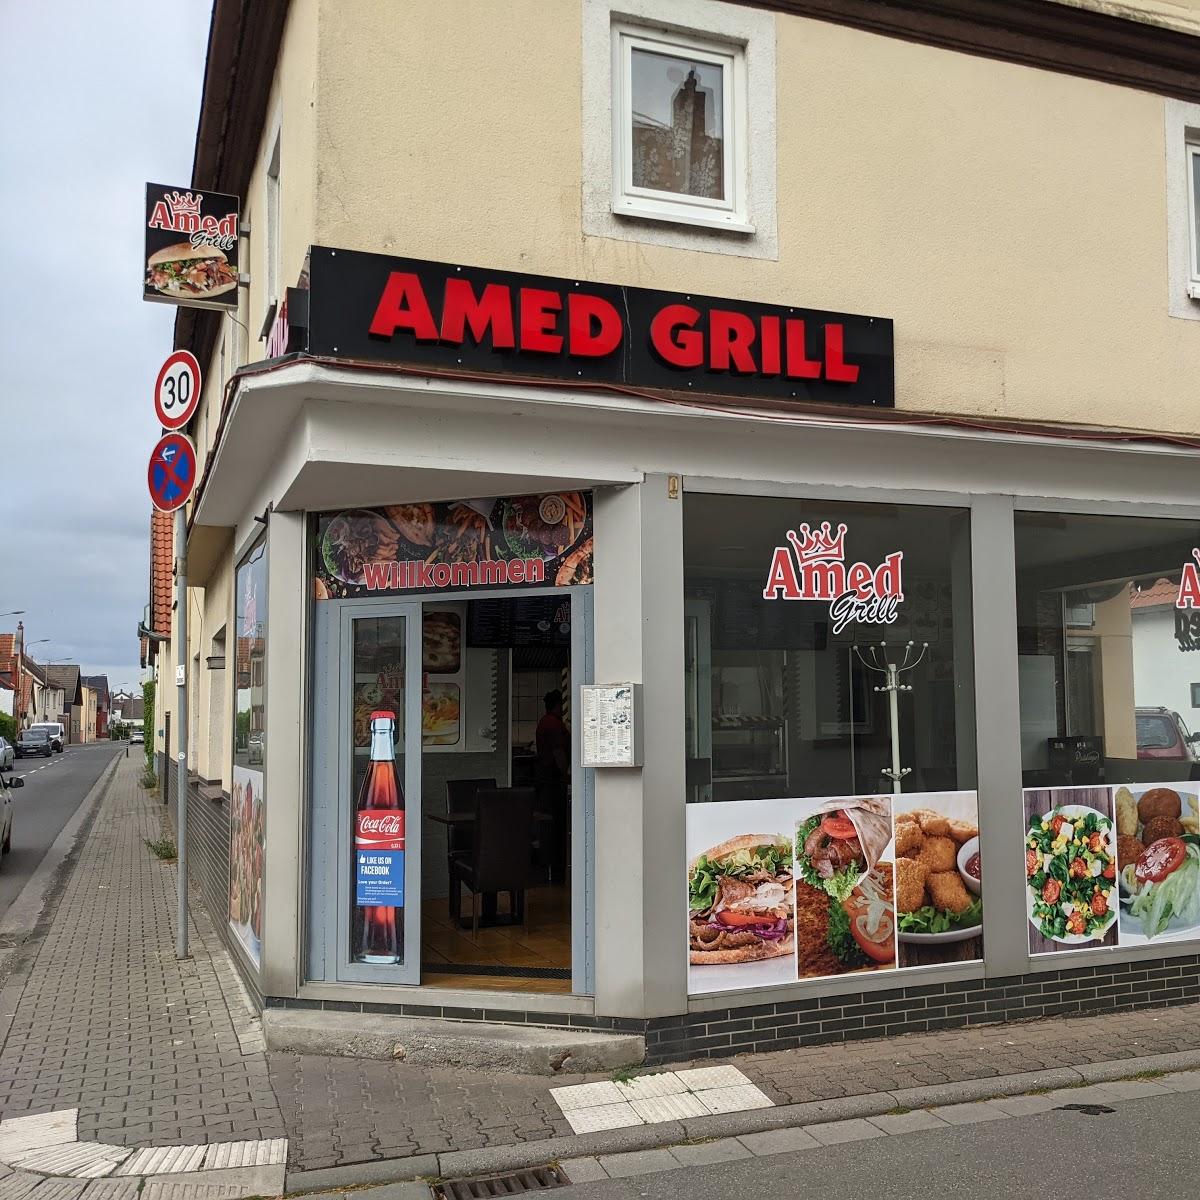 Restaurant "Amed Pizza Döner" in Frankfurt am Main